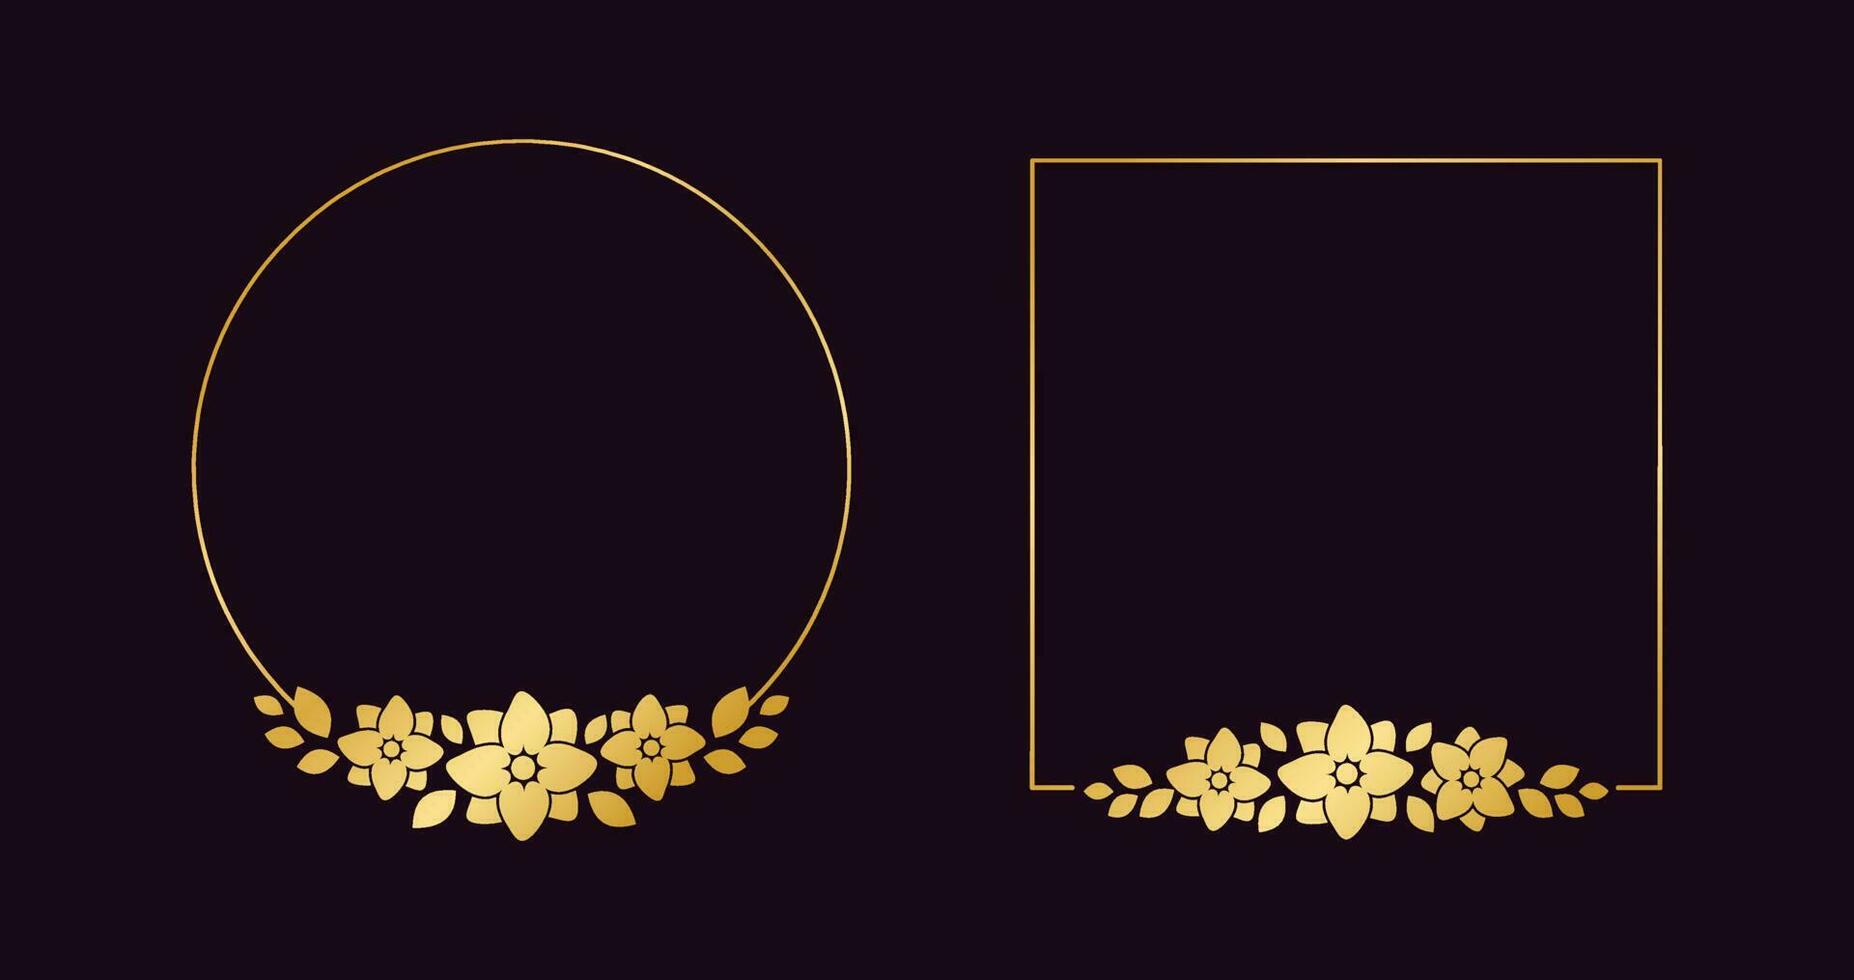 oro geométrico floral marco modelo colocar. lujo dorado marco frontera para invitar, boda, certificado. vector Arte con flores y hojas.